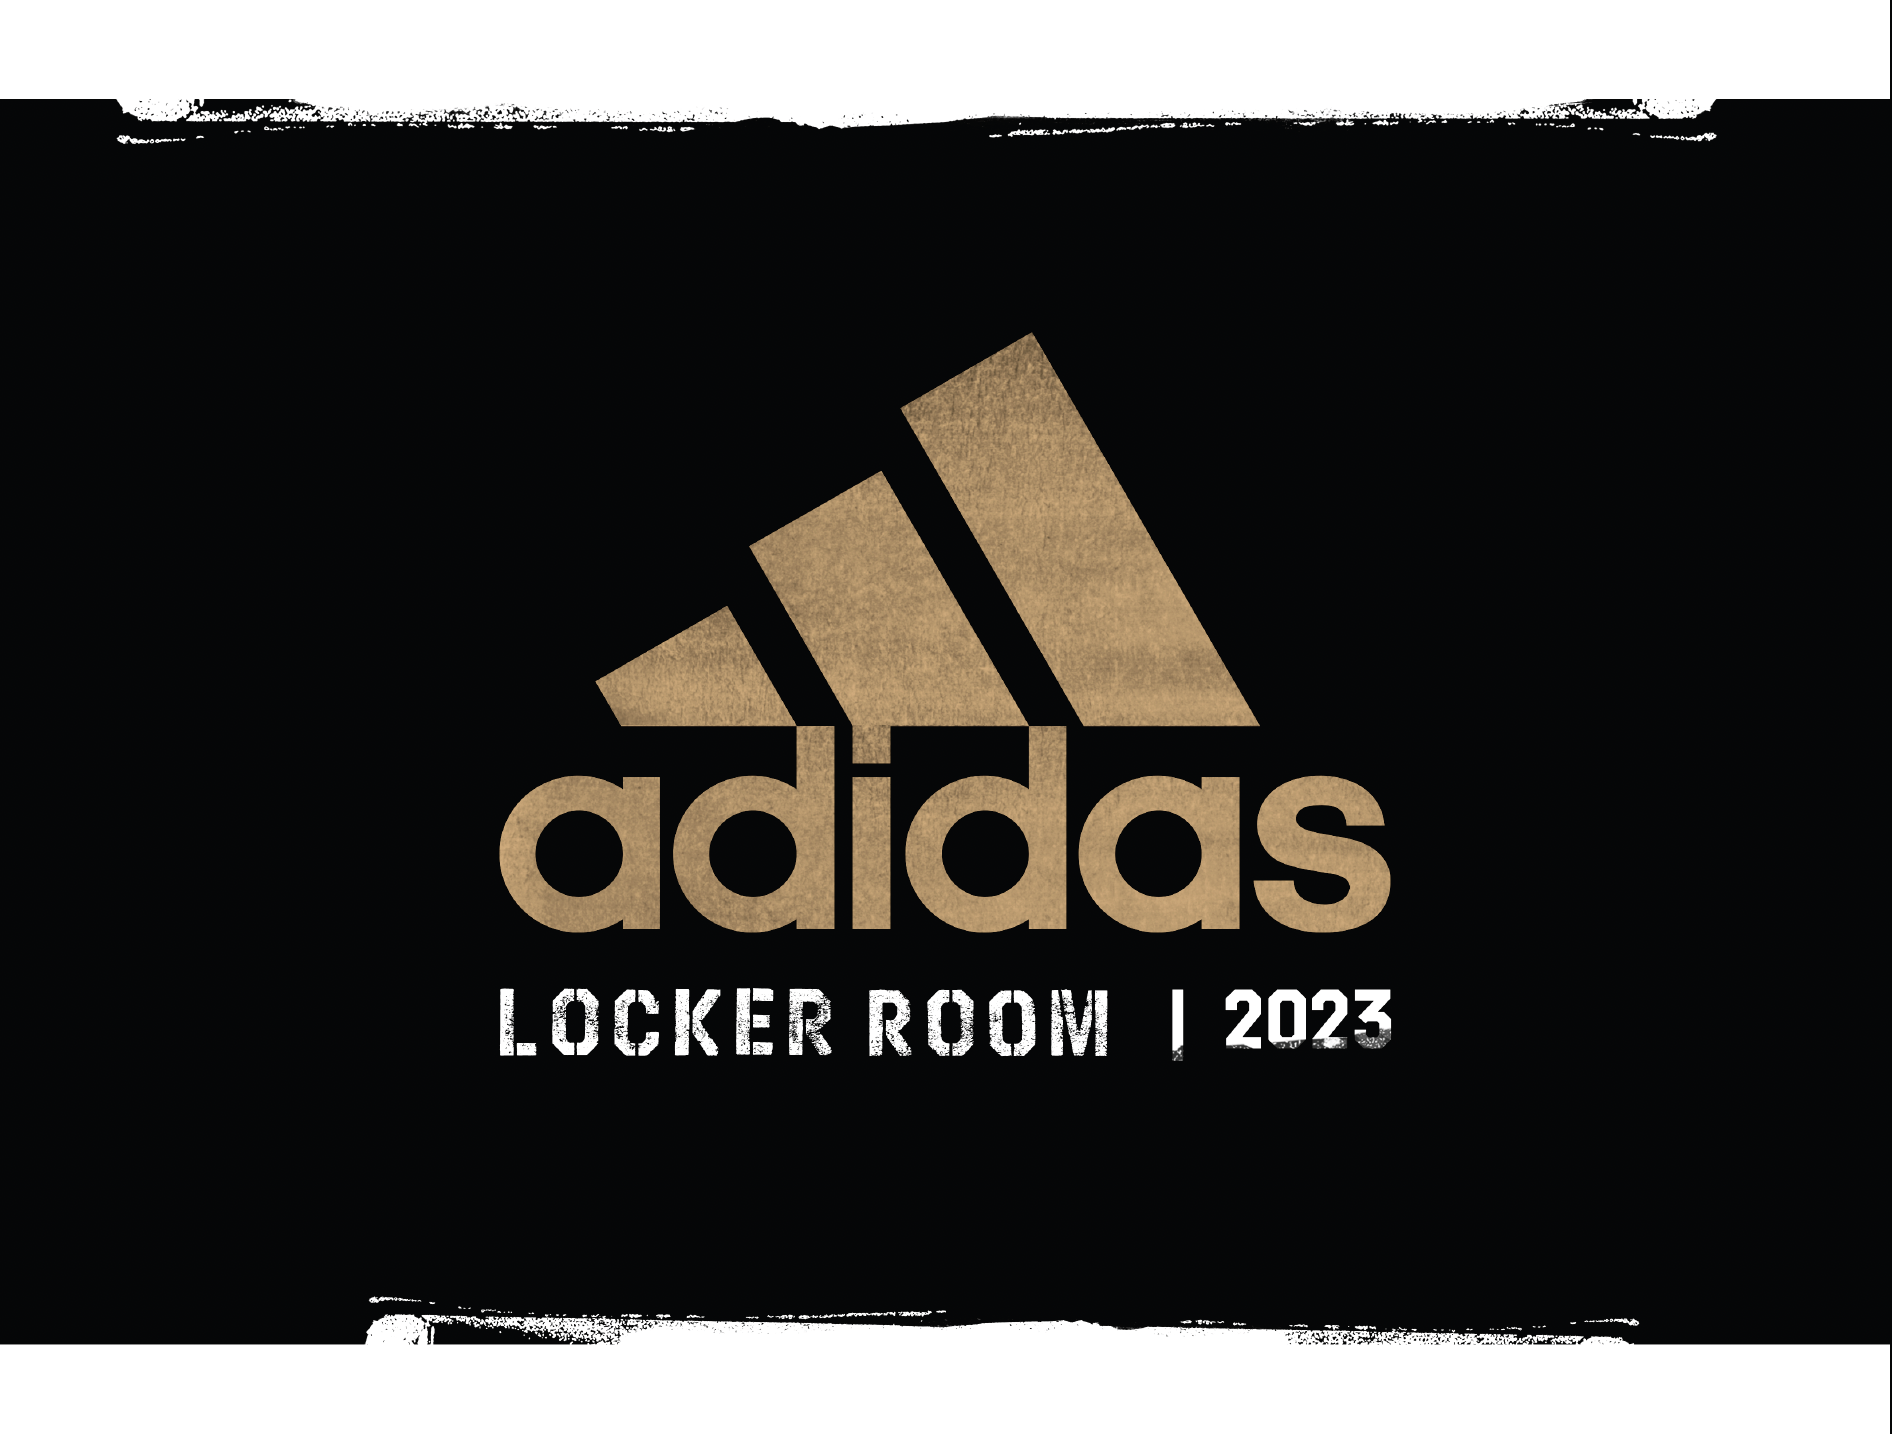 Adidas Locker Room